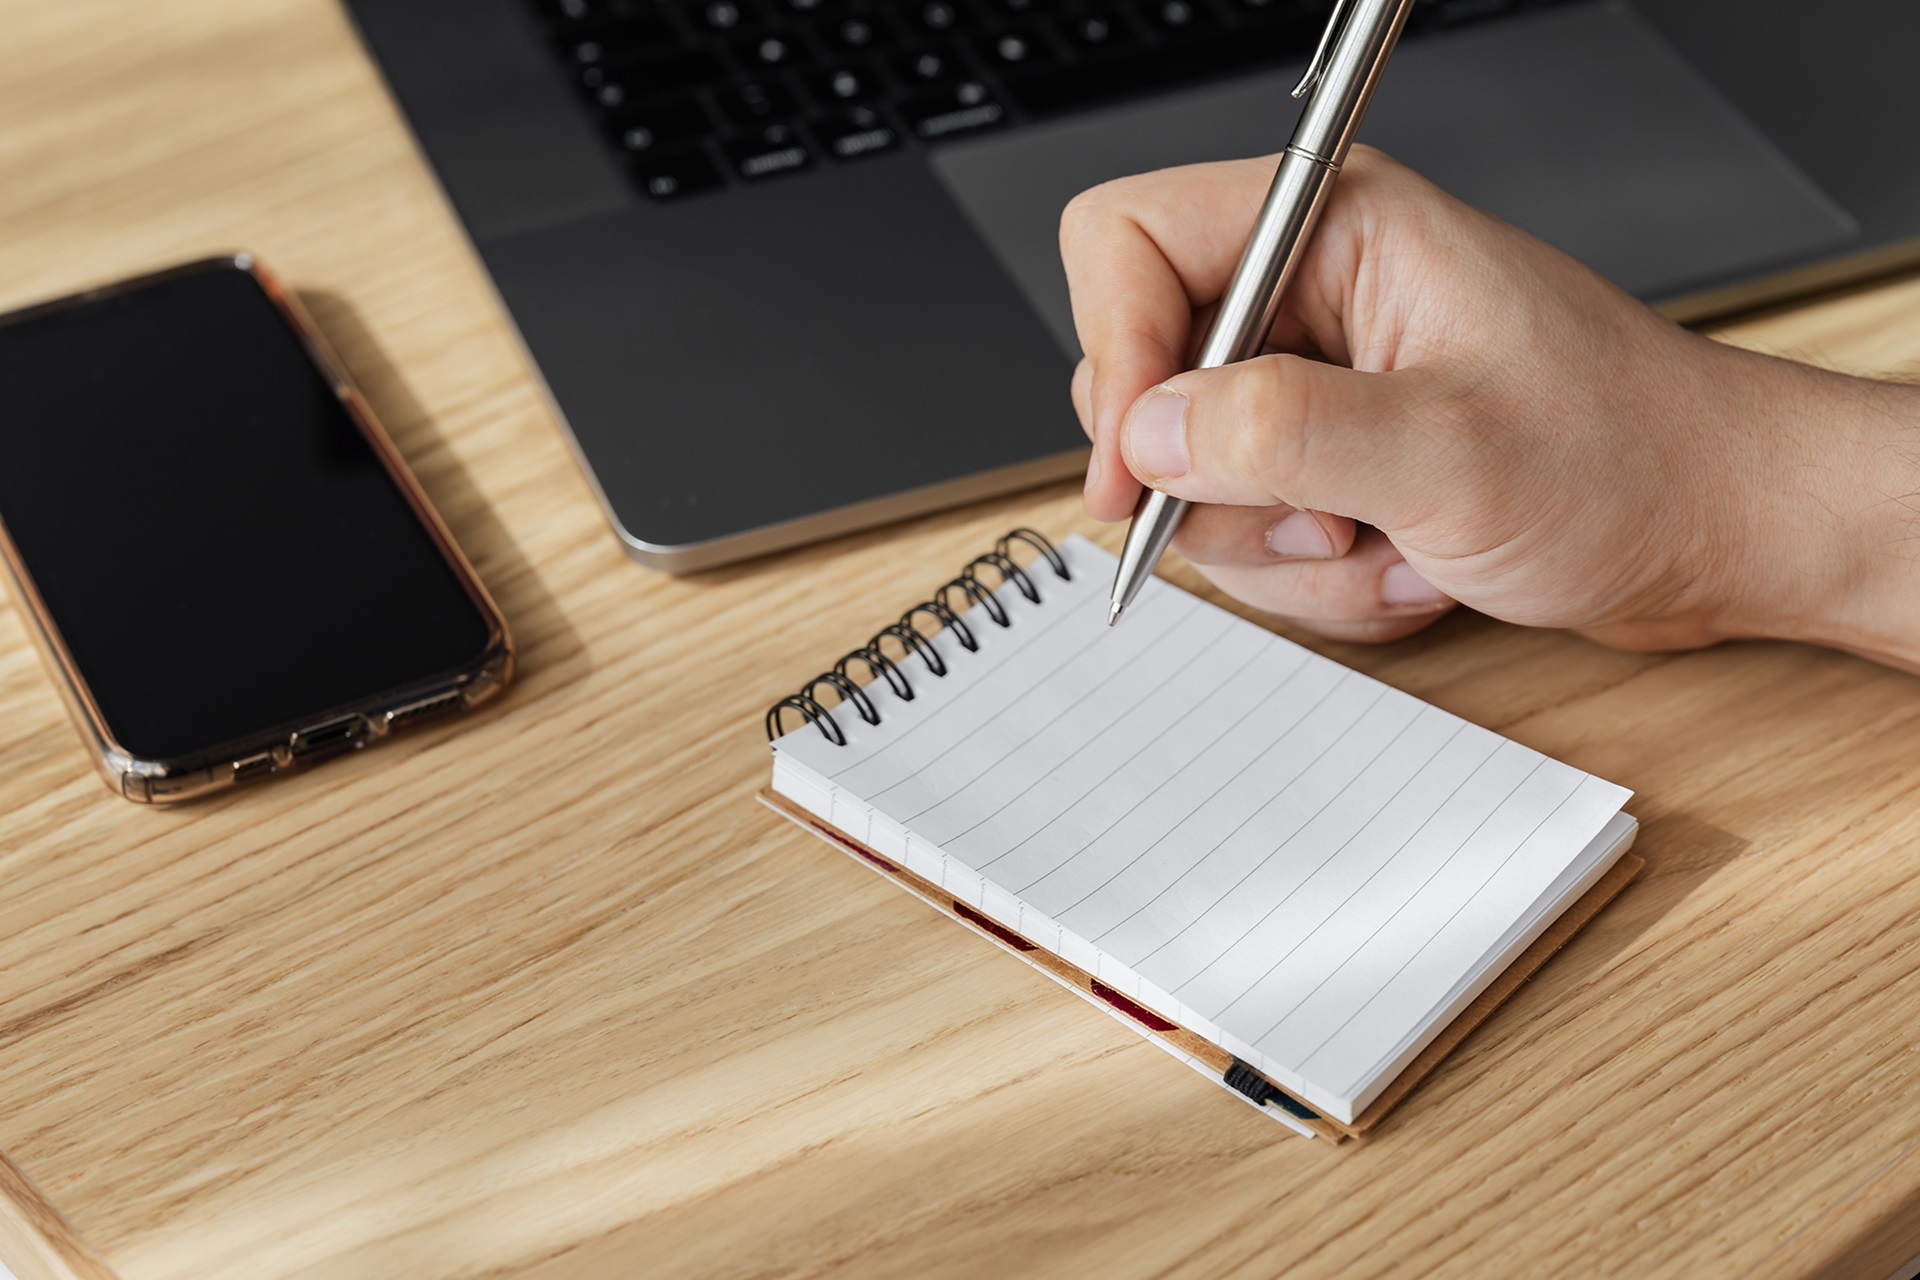 En hånd skriver på en notatblokk foran en laptop og en mobil